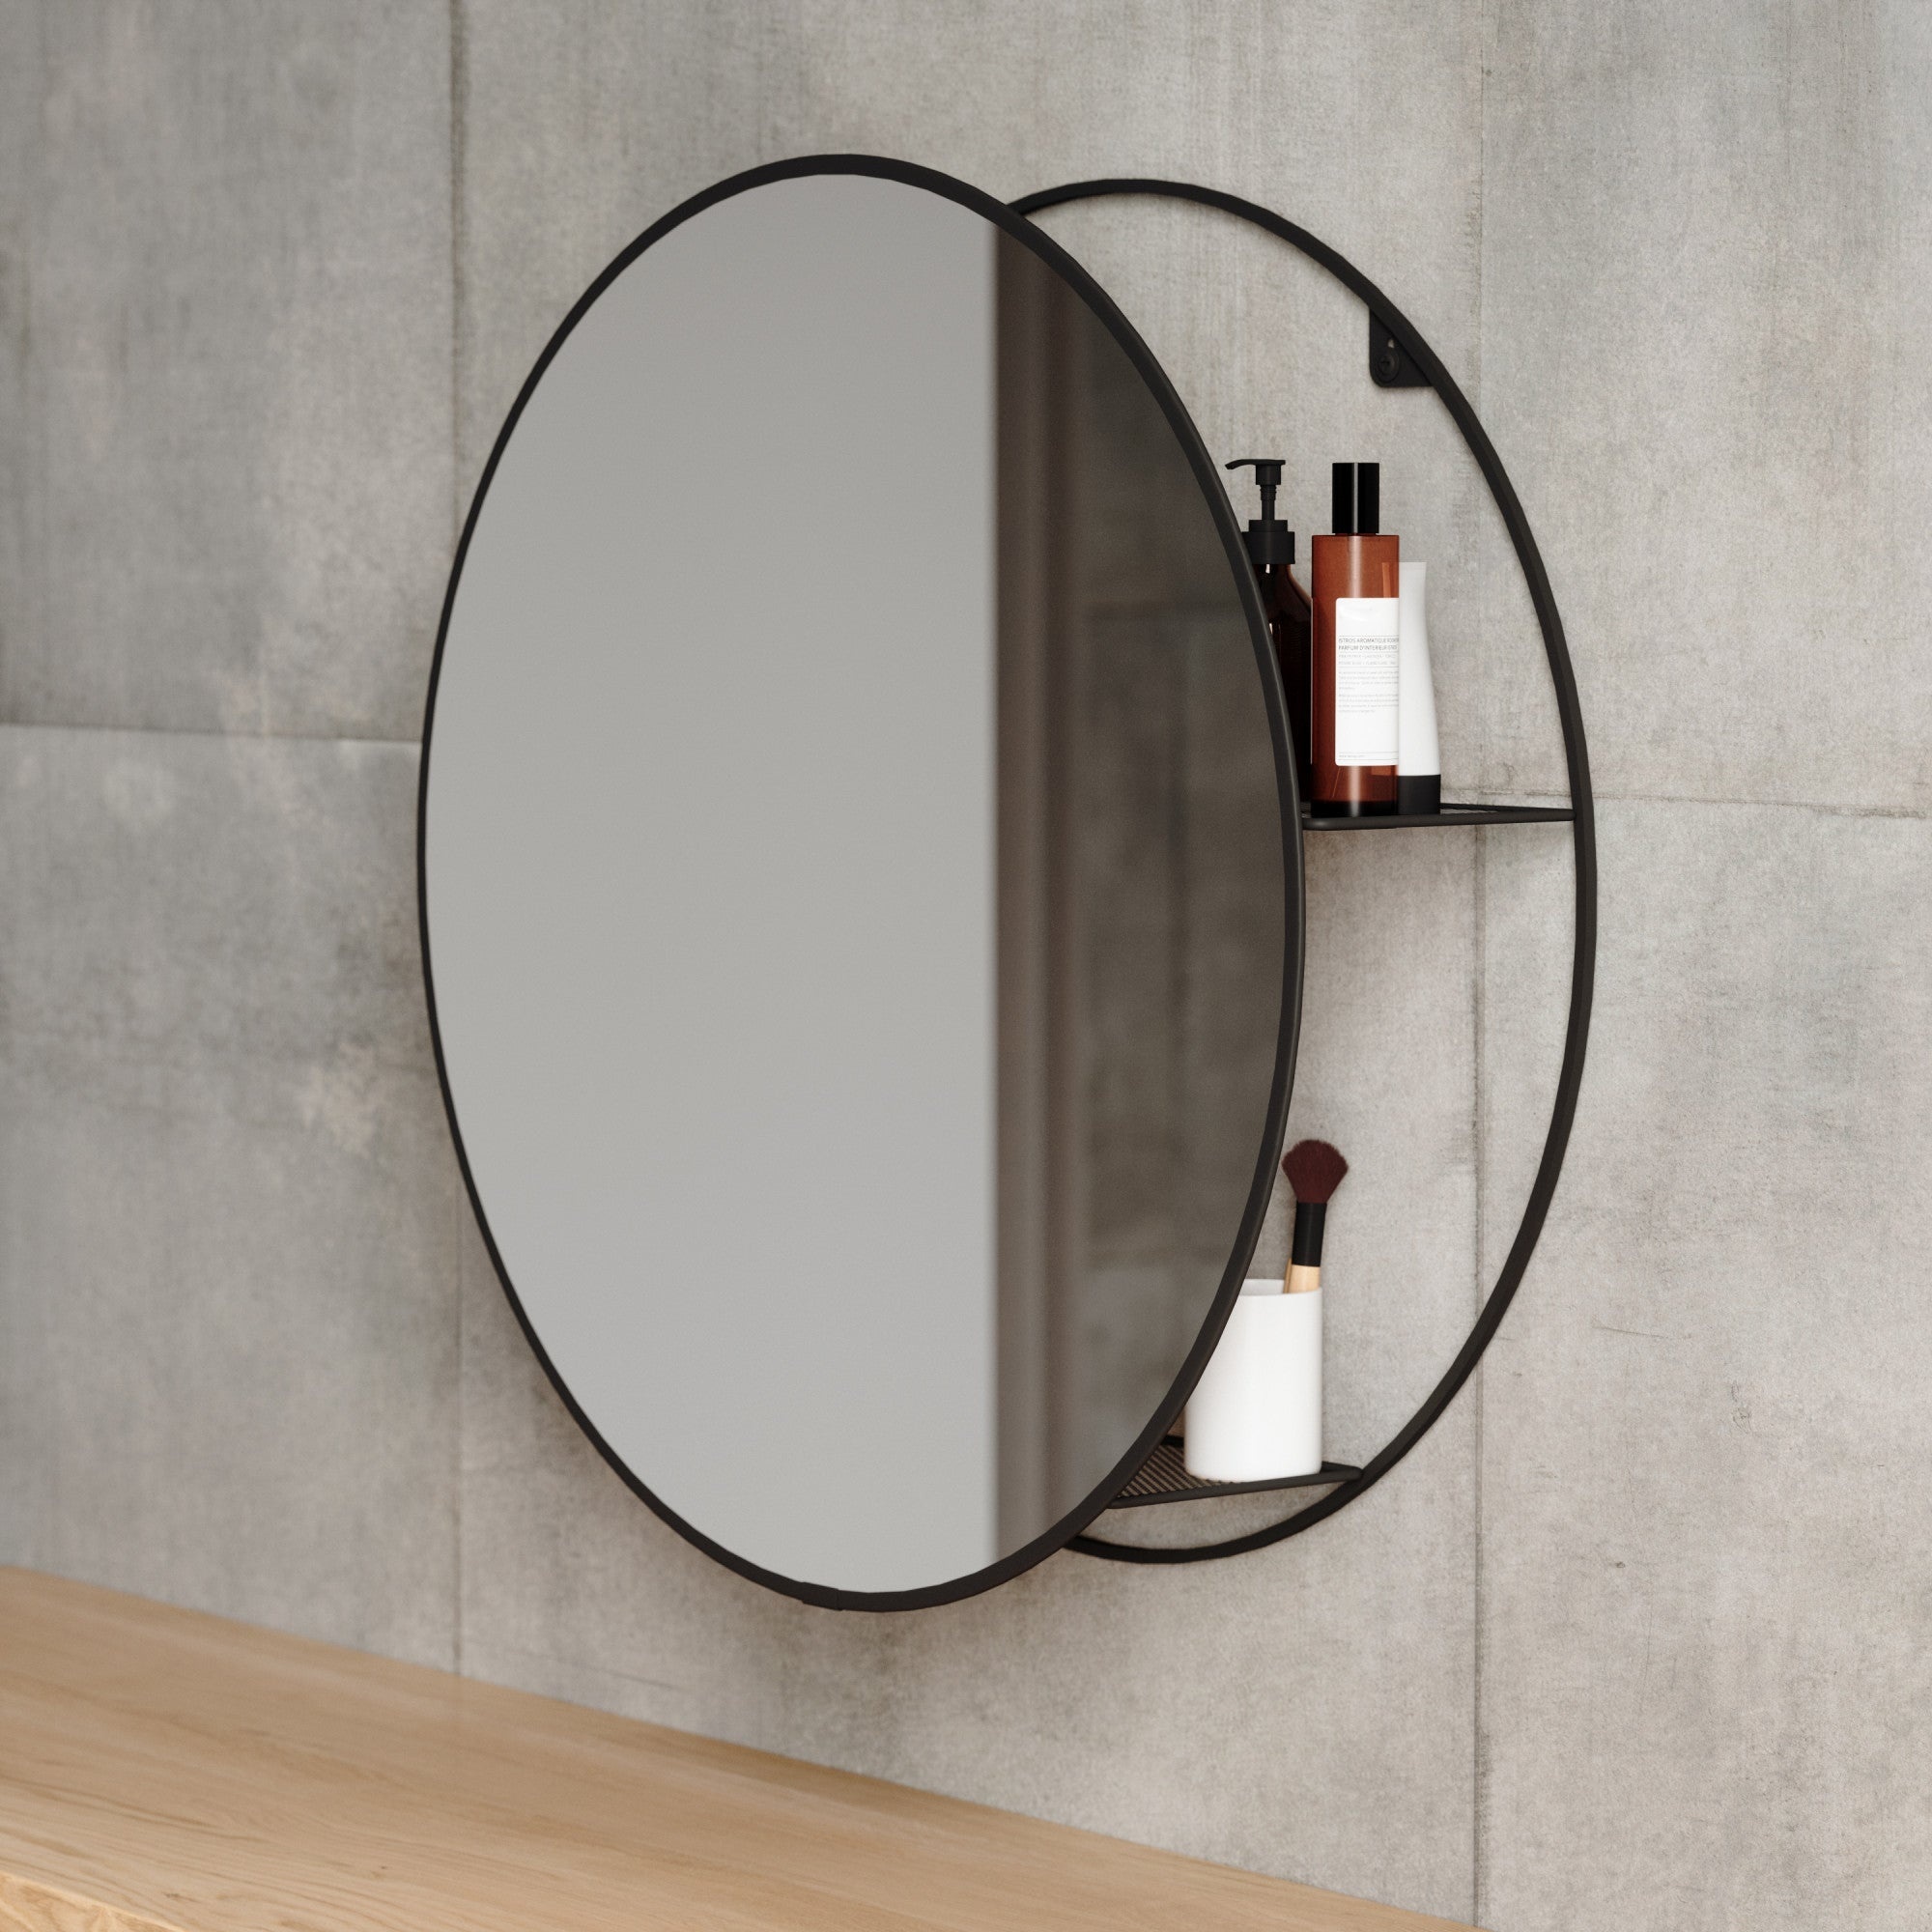 Cirko mirror storage, Modern round mirrors, Unique design, Functional unit, 2000x2000 HD Phone